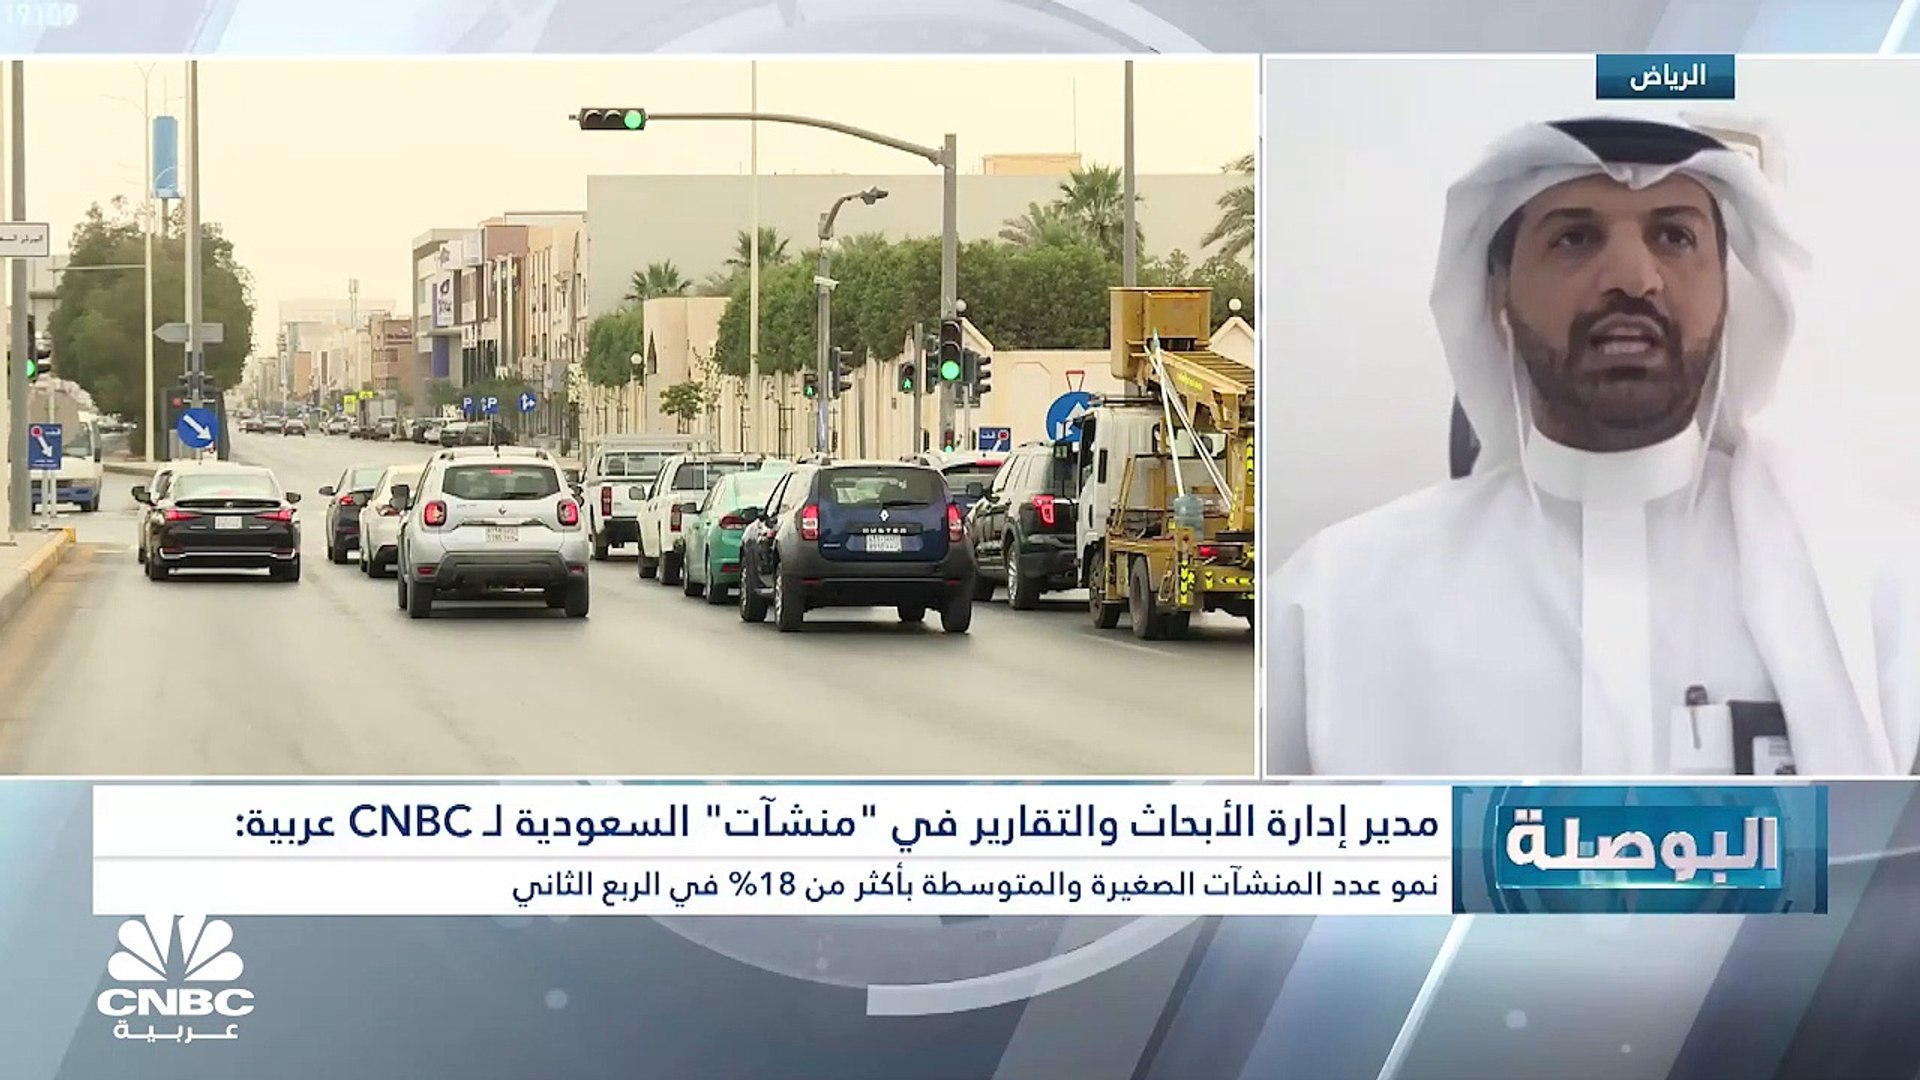 مدير إدارة الأبحاث والتقارير في منشآت السعودية لـCNBC عربية: عدد المنشآت  الصغيرة والمتوسطة في السعودية ارتفع بنسبة 41% إلى 892 منشأة - video  Dailymotion